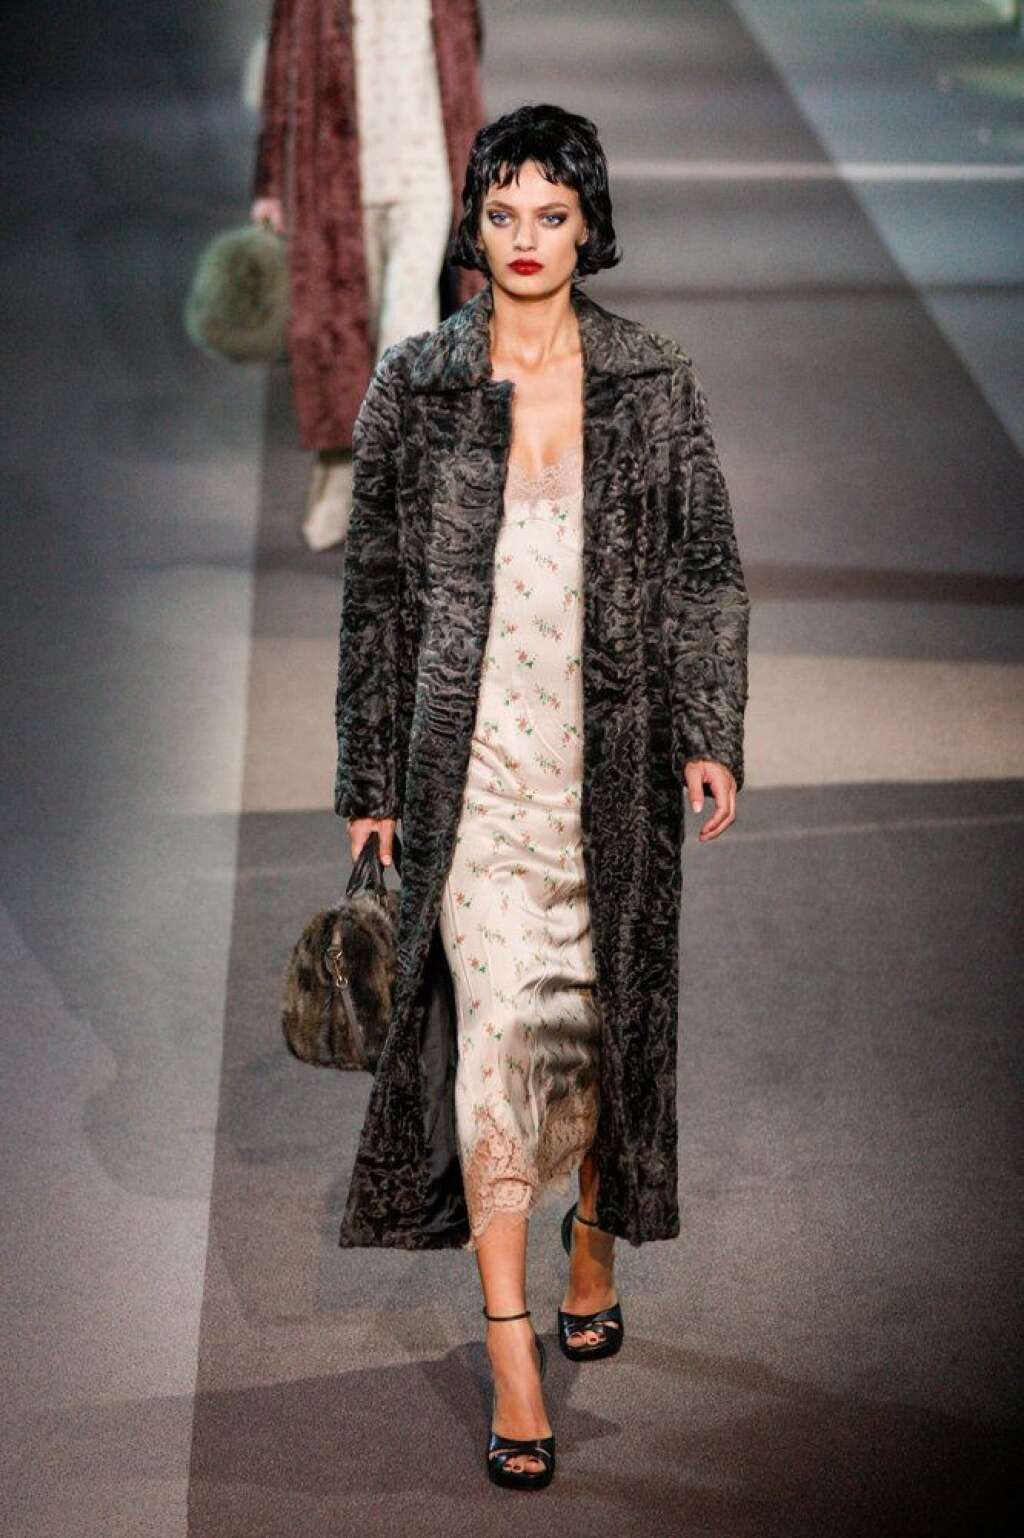 La nocturne de Vuitton - <a href="http://www.huffingtonpost.fr/raphaelle%20orsini/fashion-week-paris-louis-vuitton_b_2828659.html">Voir le billet</a>  Fashion week de Paris: <em>Automne-Hiver 2013-2014</em>